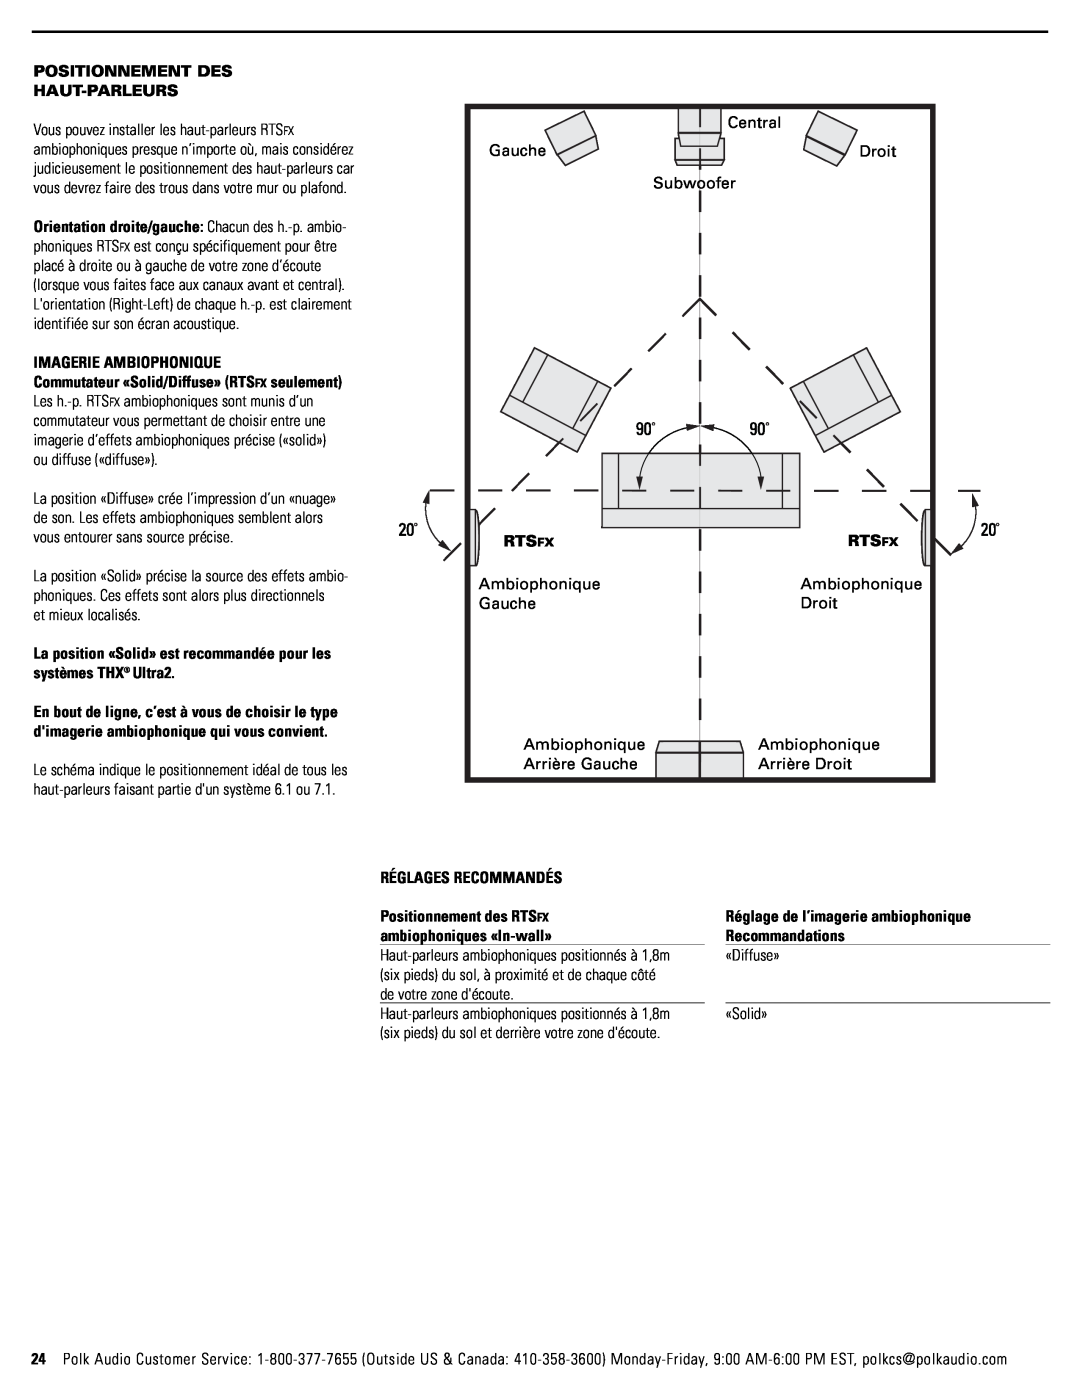 Polk Audio RTSC, RTSFX owner manual Positionnement Des Haut-Parleurs 